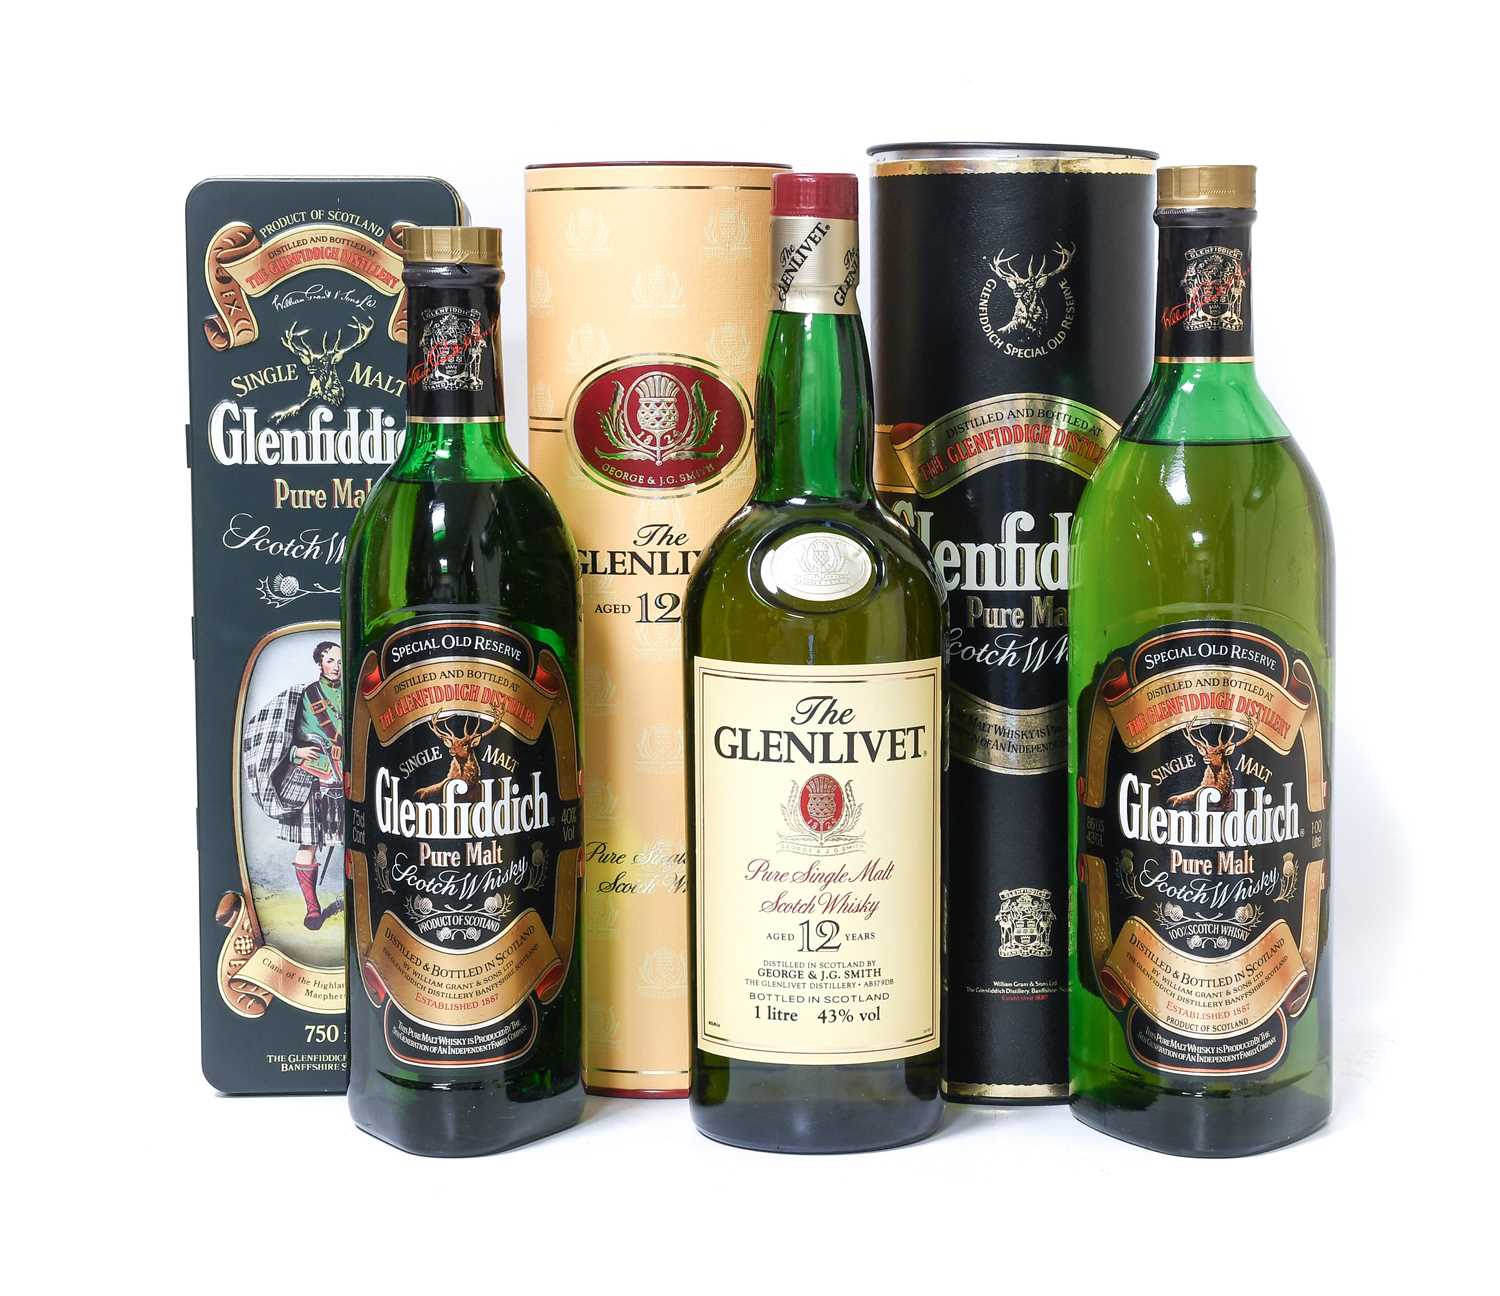 Glenlivet 12 Year Old Pure Single Malt Scotch Whisky, 43% vol 1 litre (one bottle), Glenfiddich